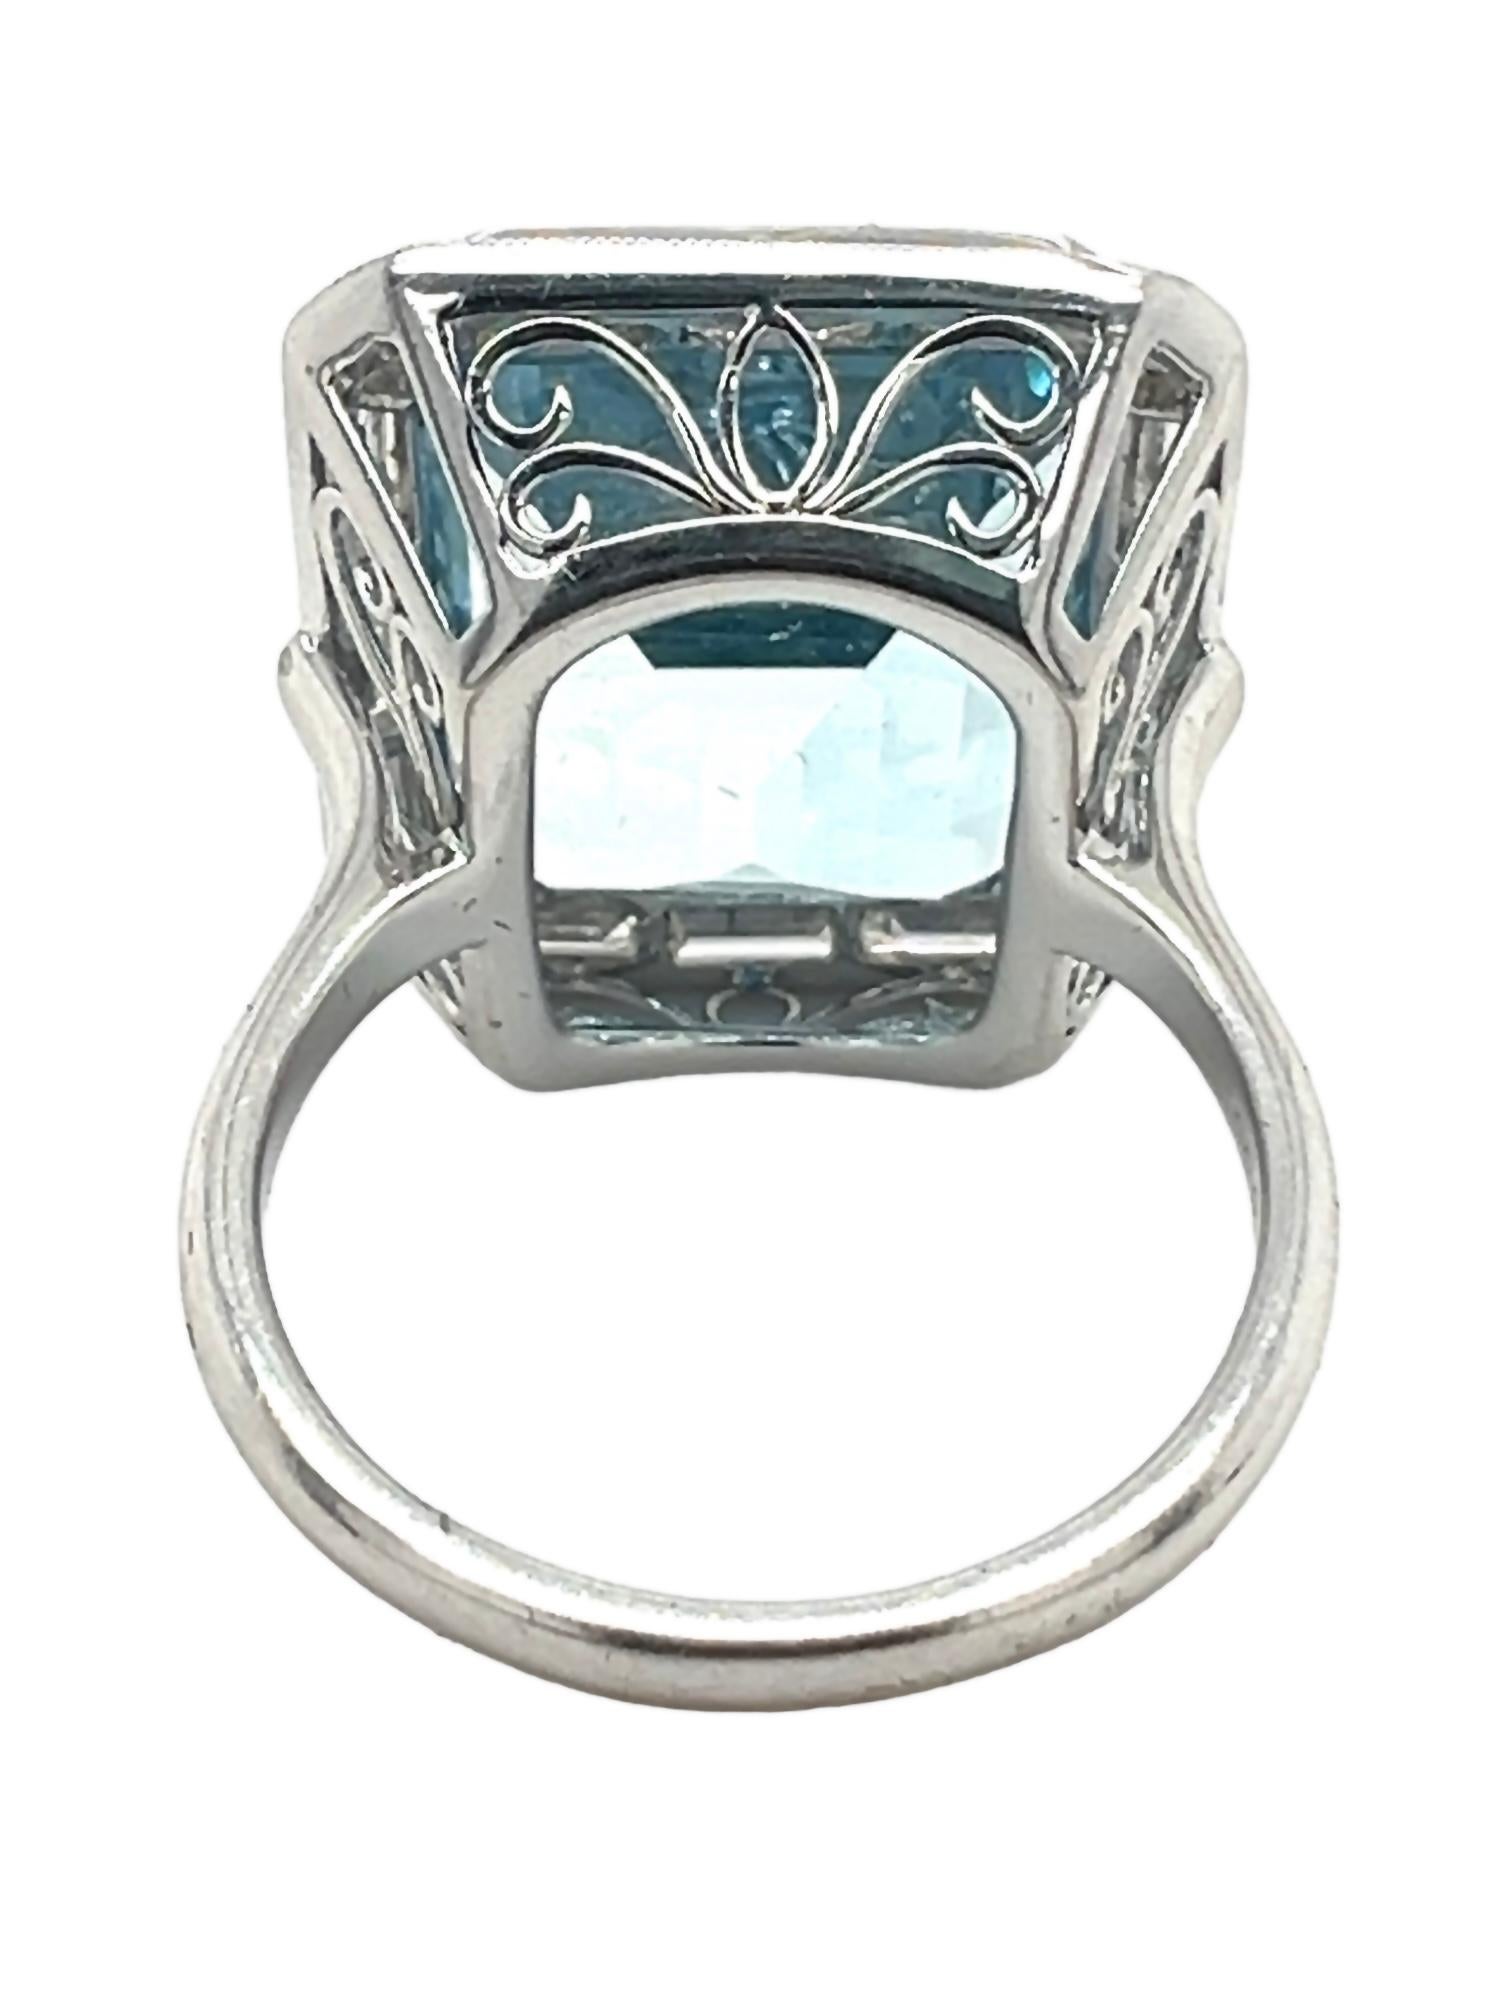 Emerald Cut Sophia D. 16.25 Carat Aquamarine Ring For Sale